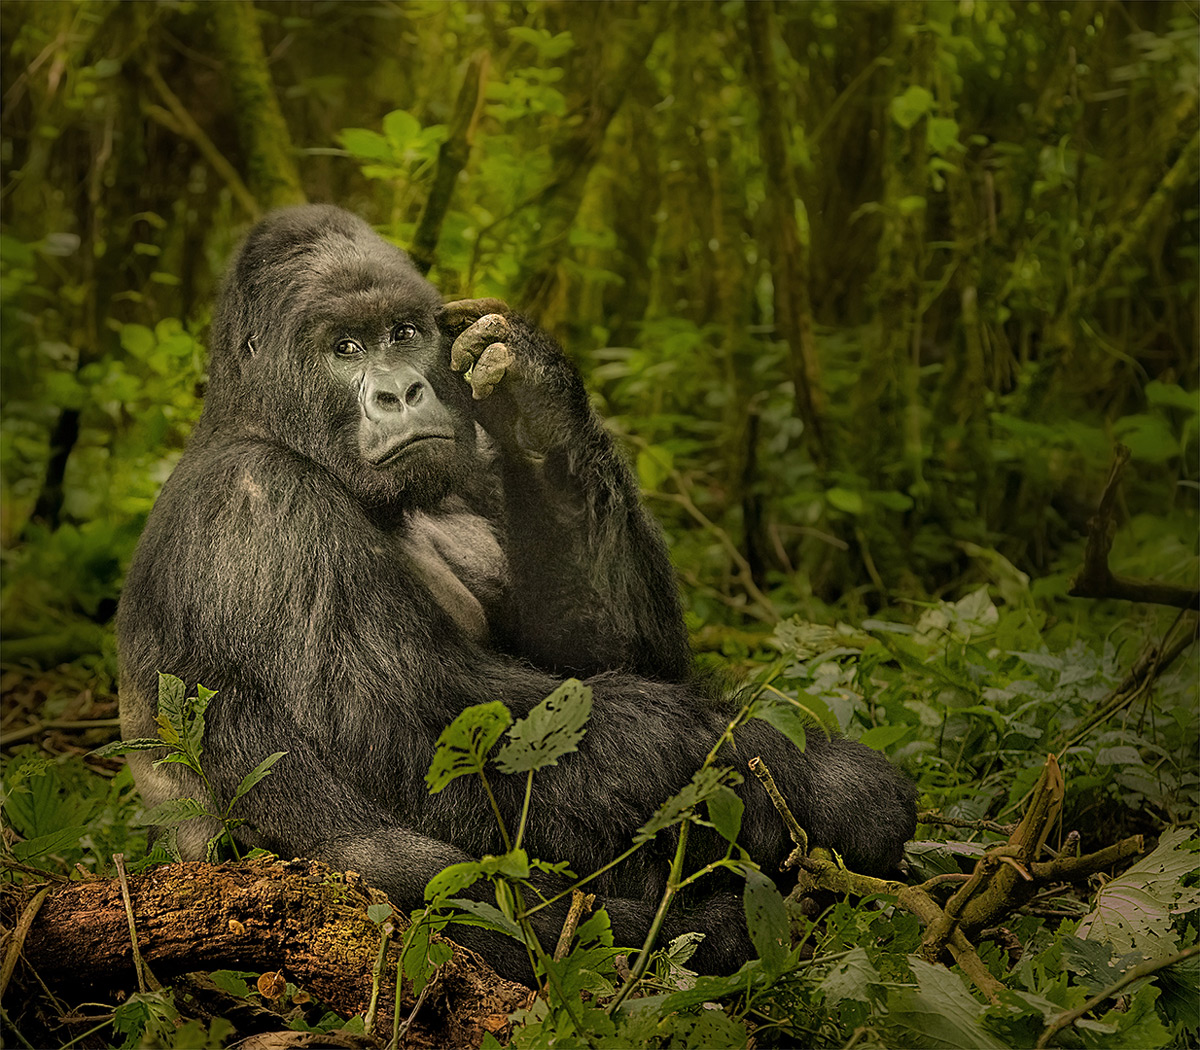 An impressive silverback mountain gorilla in Virunga National Park, Democratic Republic of the Congo © Hesté de Beer